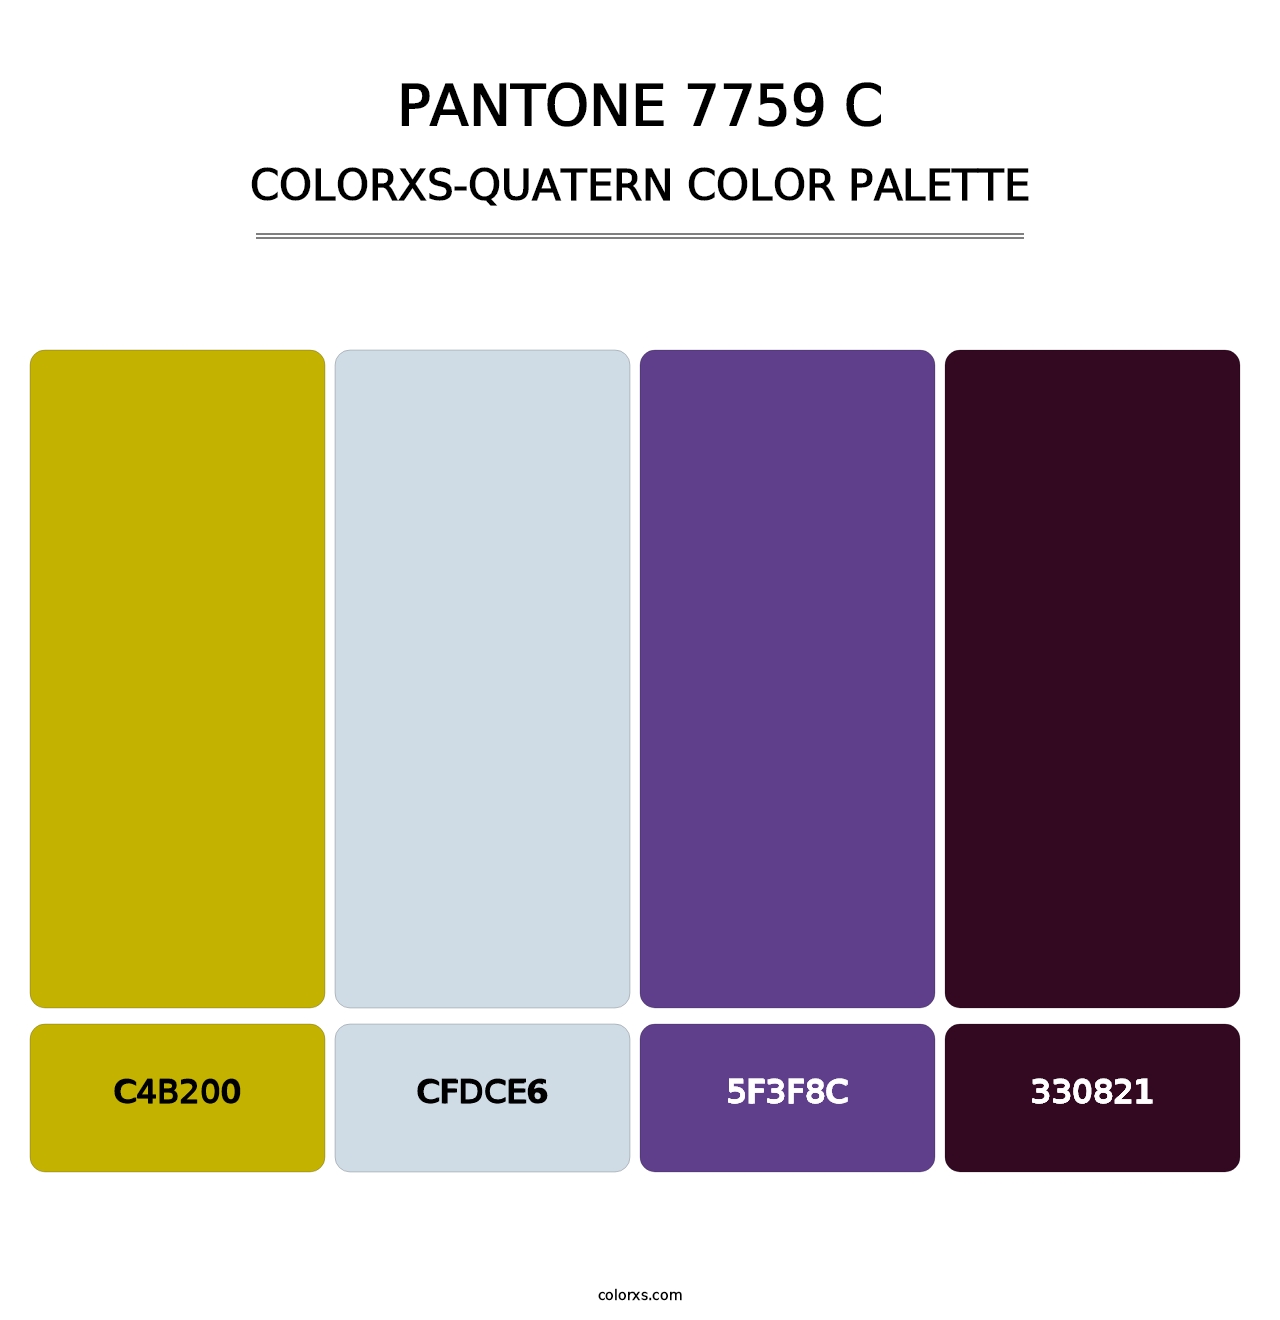 PANTONE 7759 C - Colorxs Quatern Palette